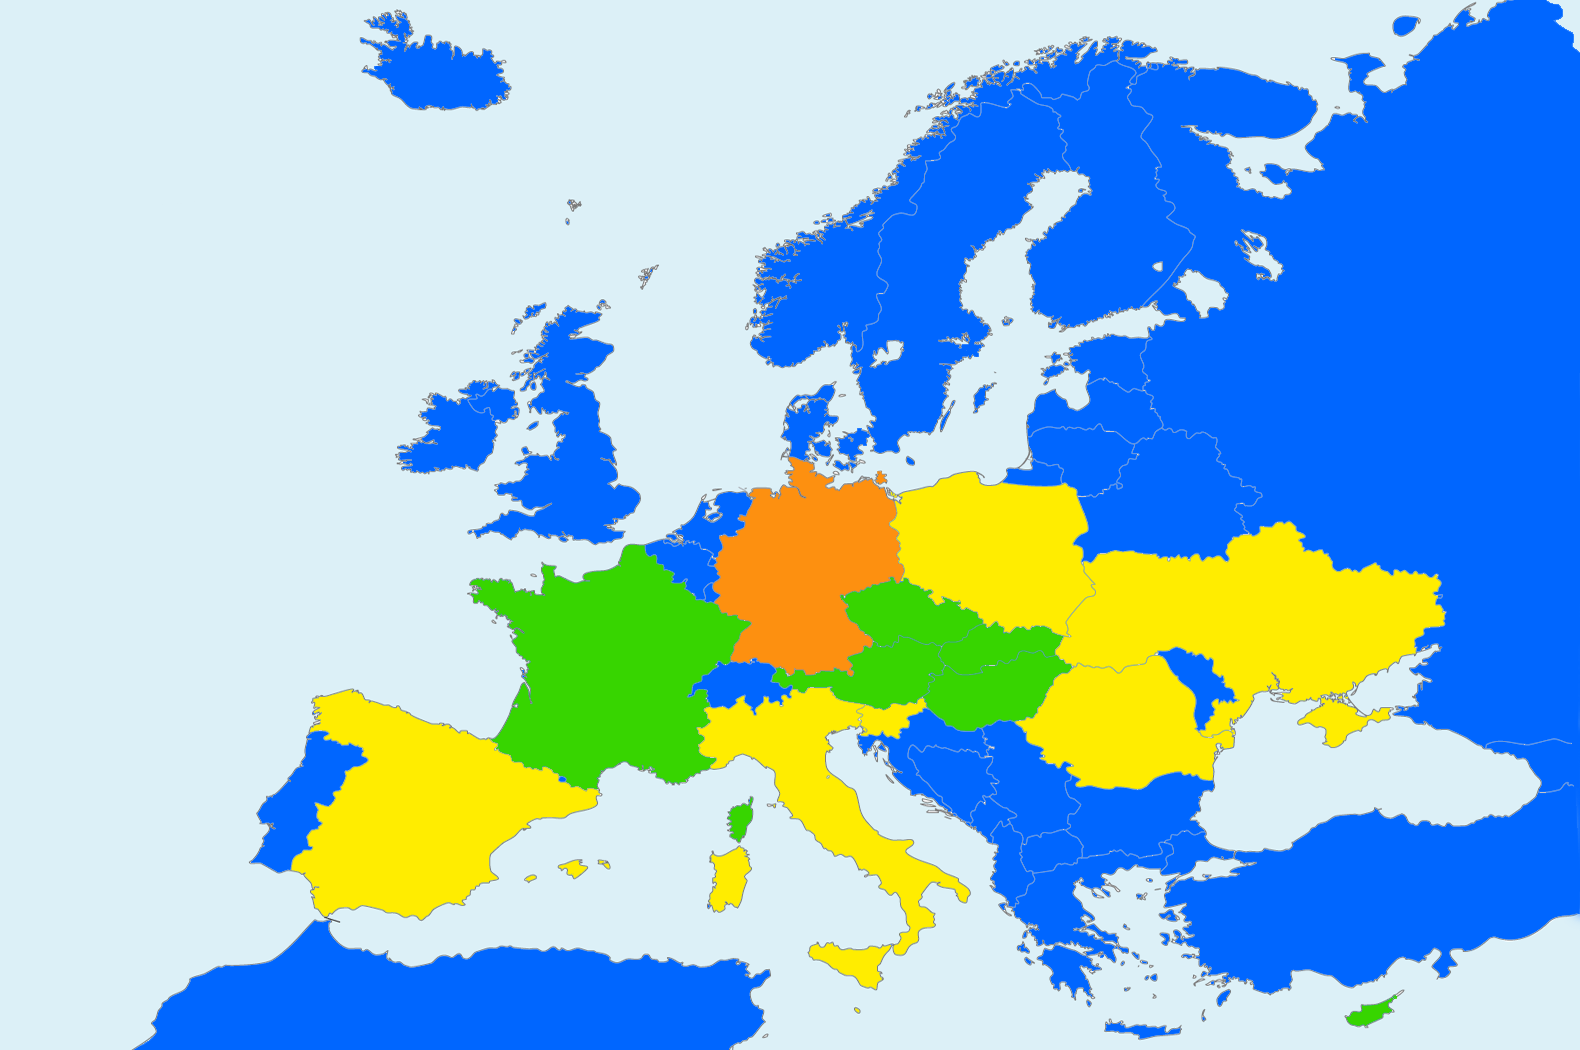 Landkarte von Europa in Blau mit den aktuellen Partnerländern des Europäischen Kunststipendiums des Bezirks Oberbayern 2023 in Grün, früheren Partnerländern in Gelb und Deutschland in Orange.